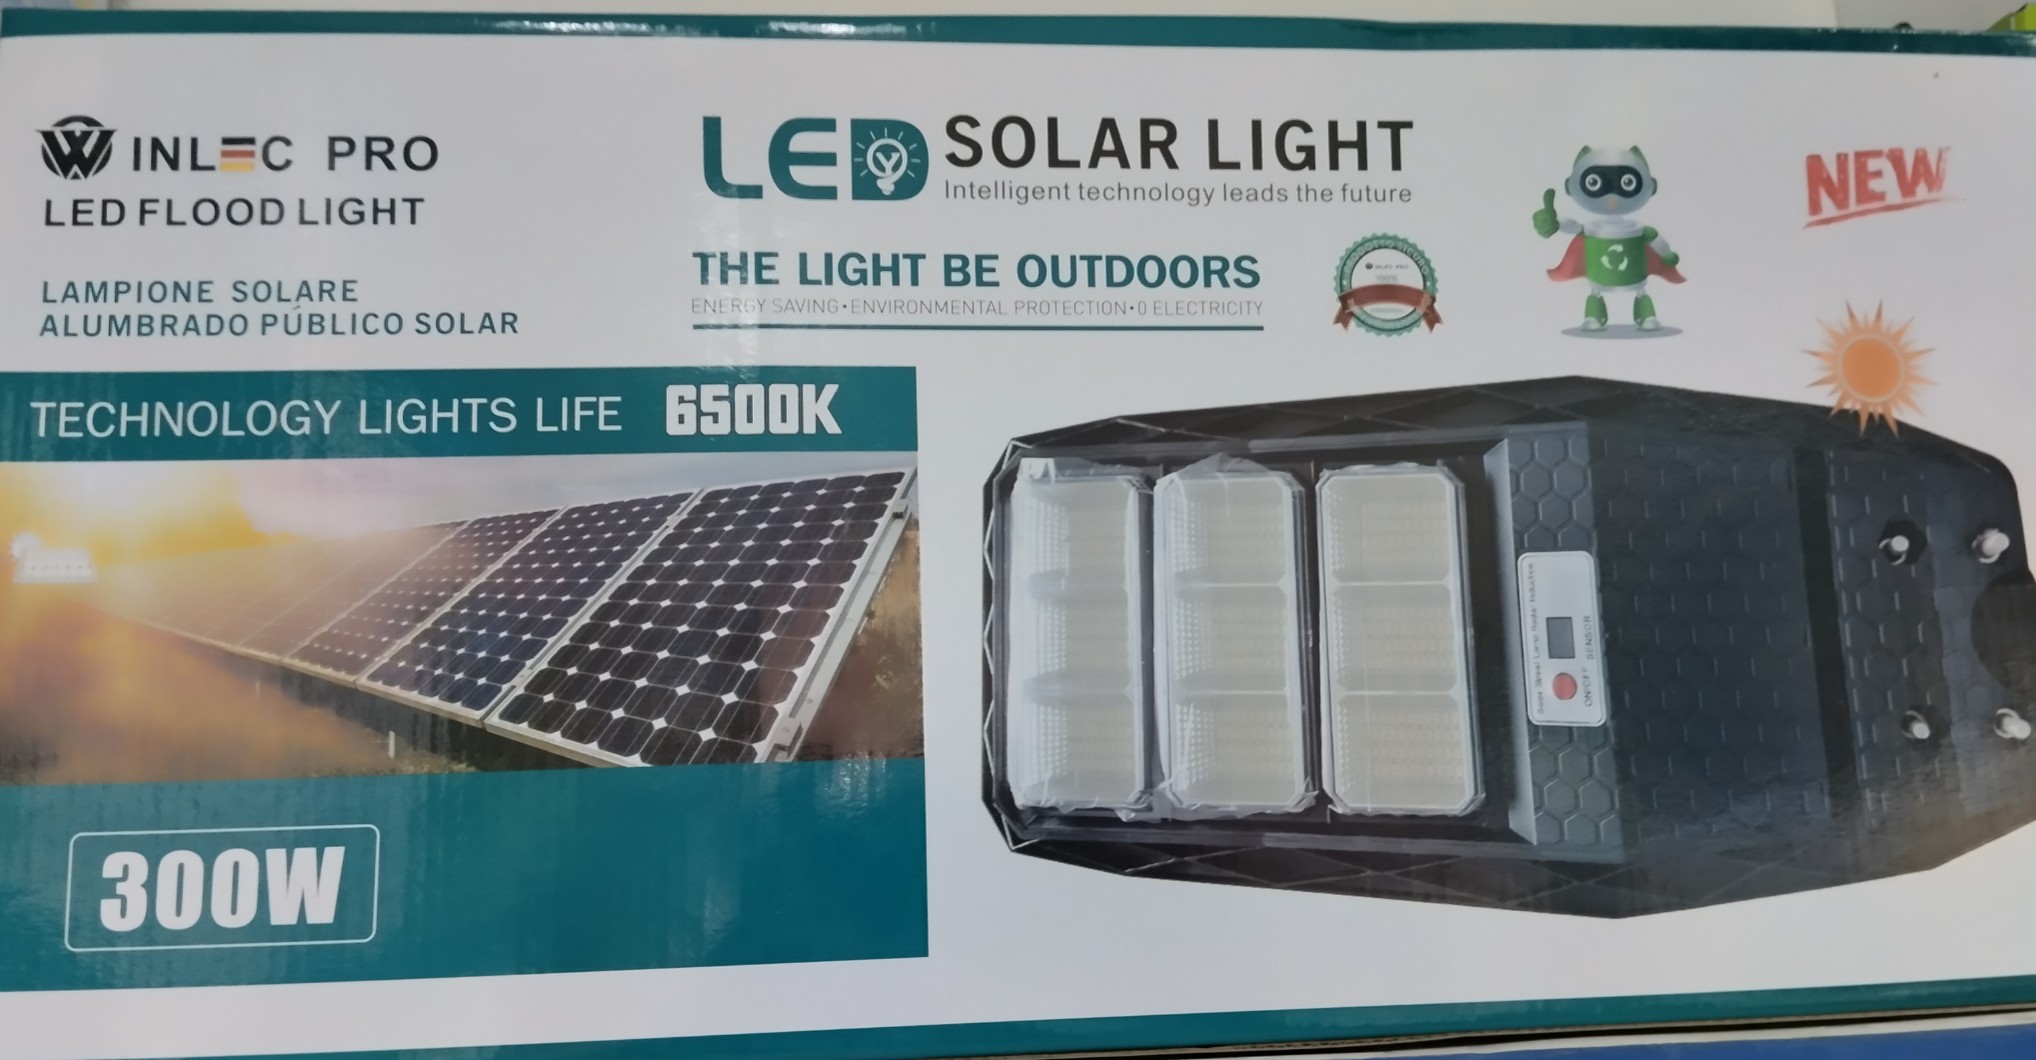 herramientas, jardines y exterior - Lámpara solares de 300watt.